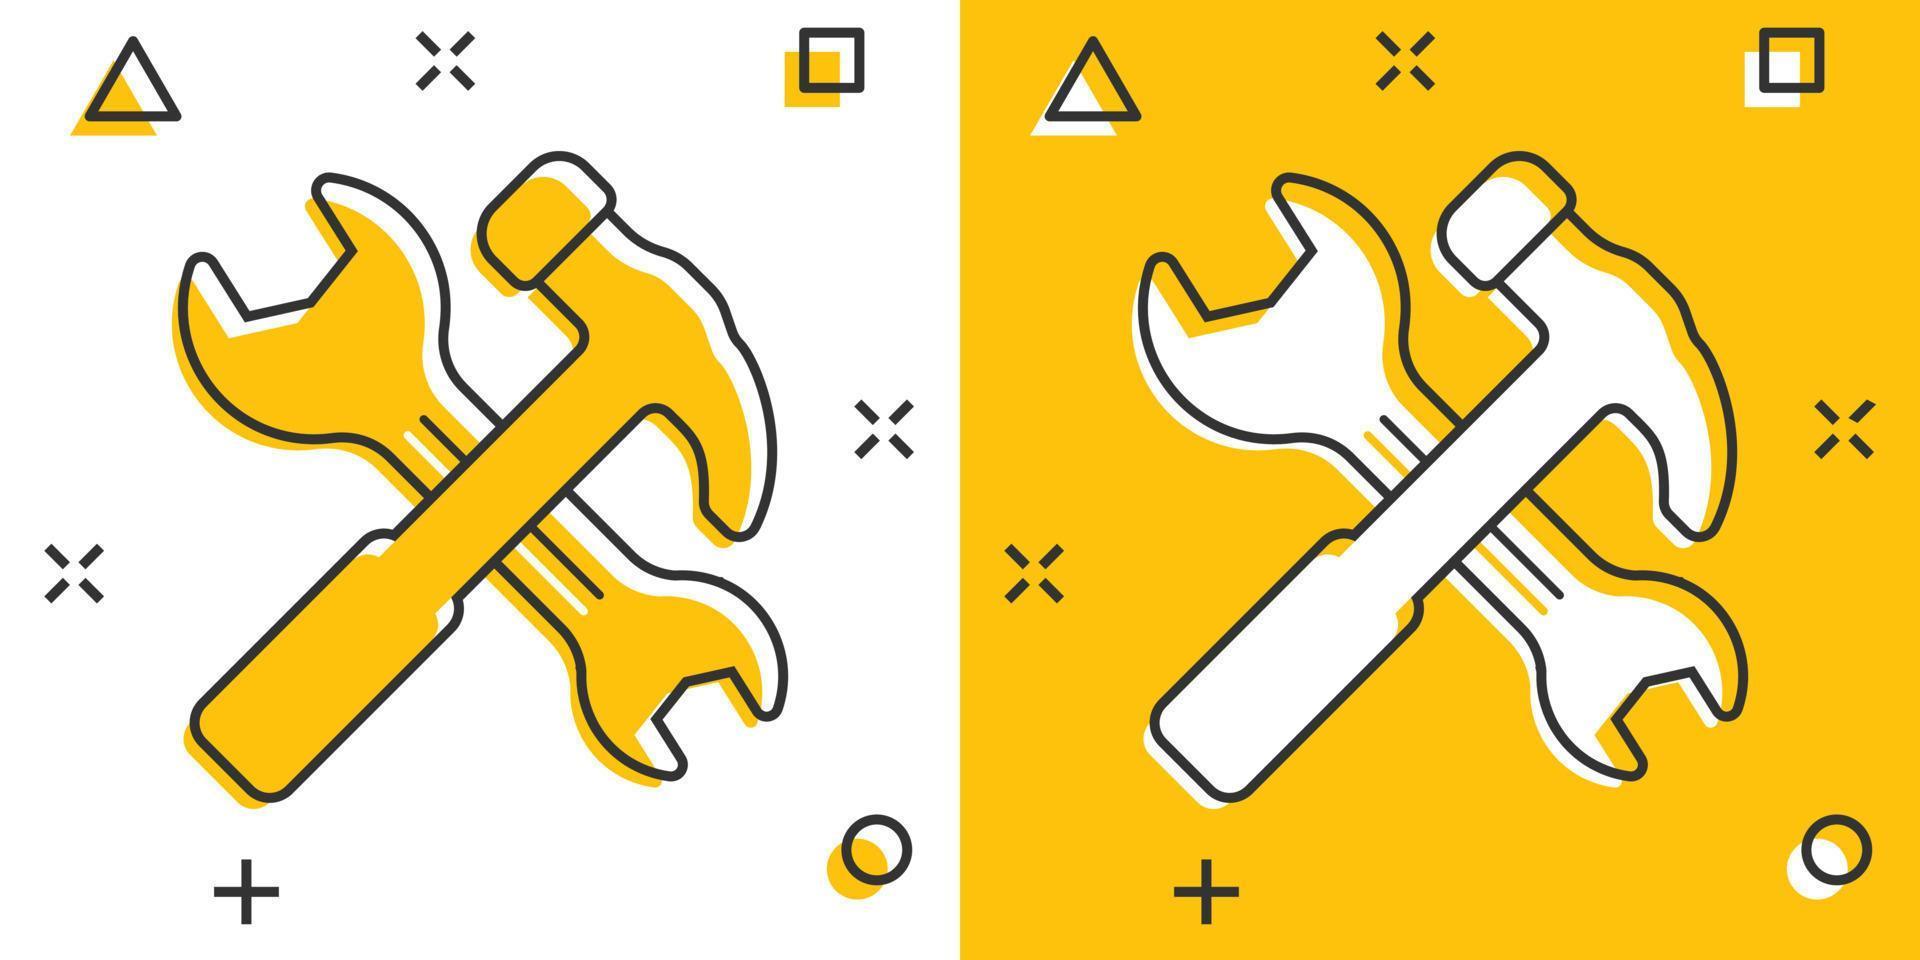 Hammer mit Schraubenschlüssel-Symbol im flachen Stil. Arbeitsinstrument-Vektorillustration auf weißem getrenntem Hintergrund. Geschäftskonzept für Reparaturgeräte. vektor